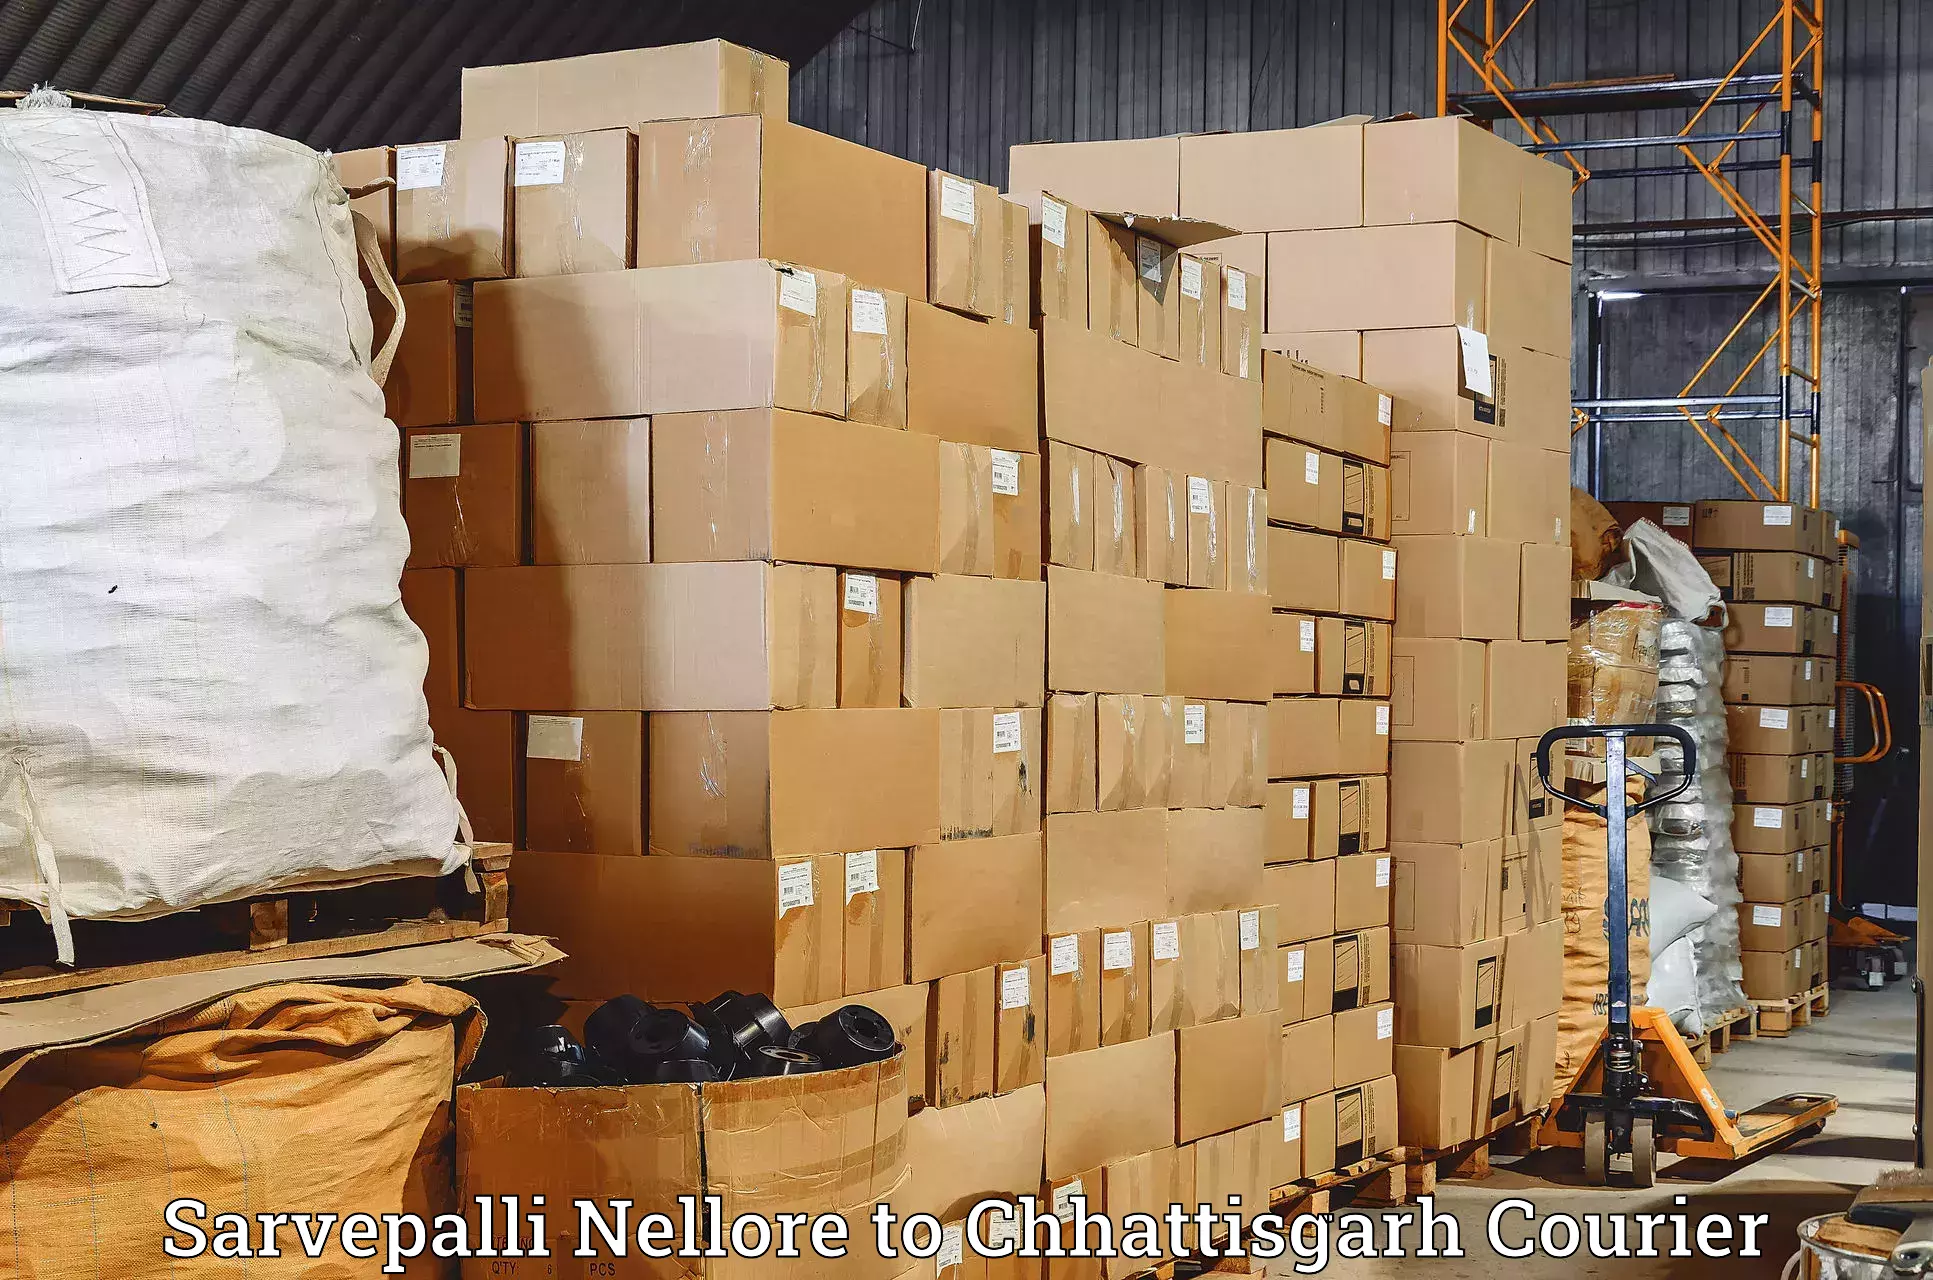 Cargo delivery service Sarvepalli Nellore to Durg